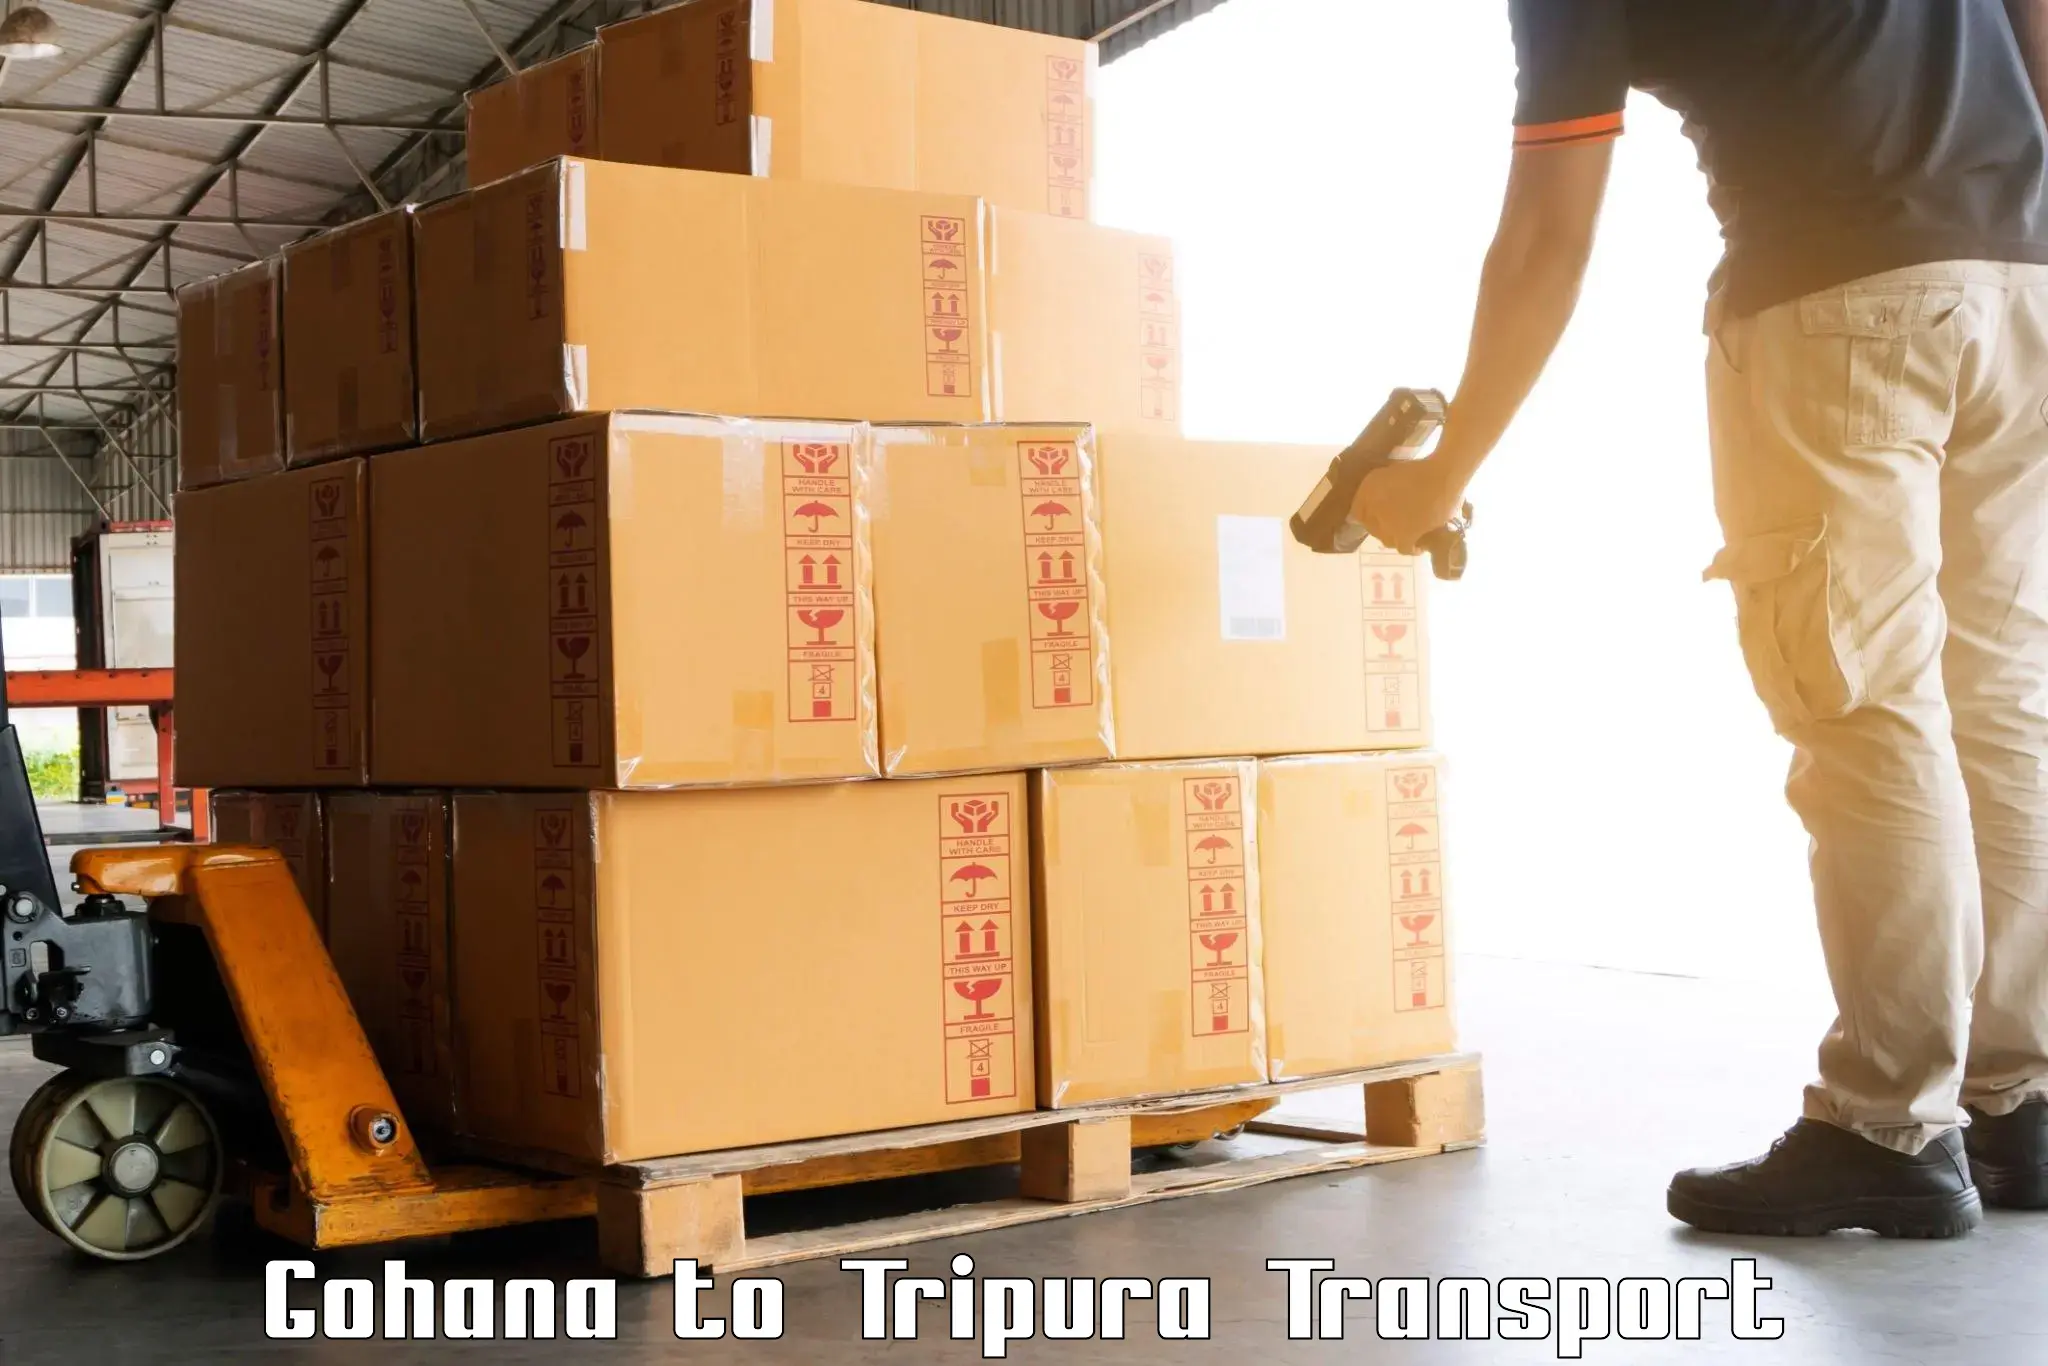 Container transportation services Gohana to Kailashahar